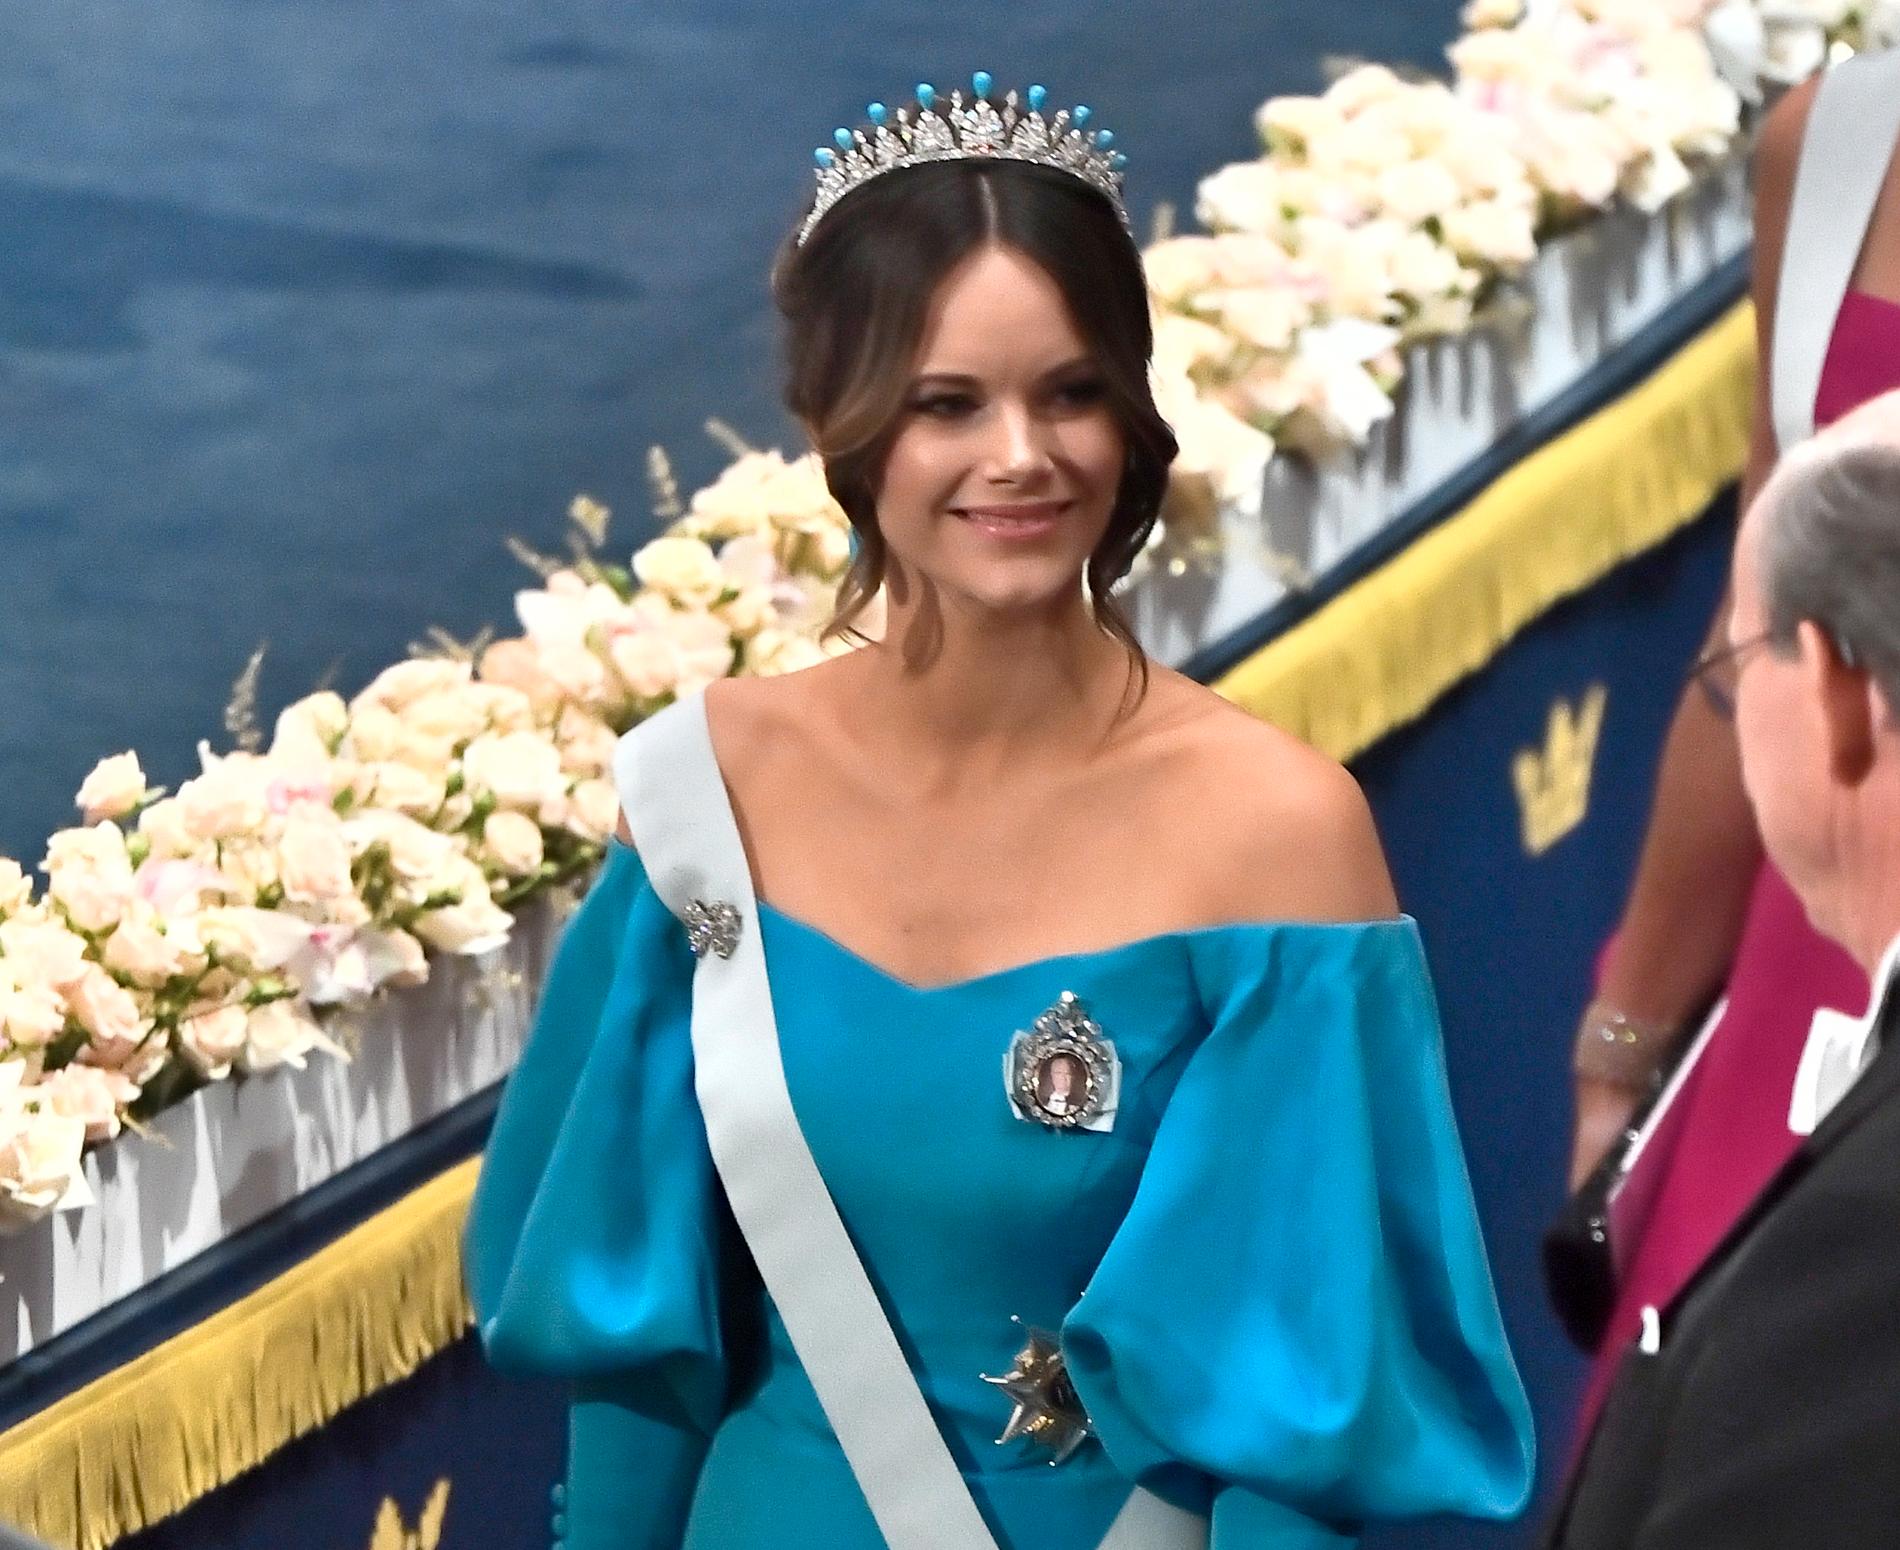 Även prinsessan Sofia flirtar med åttiotalet med sin turkosa klänning med voluminösa ärmar.